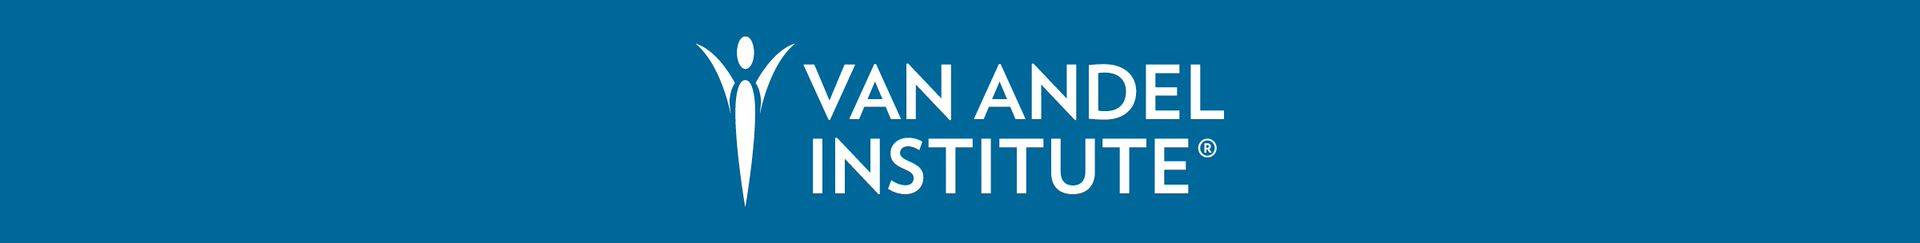 Van Andel Institute banner